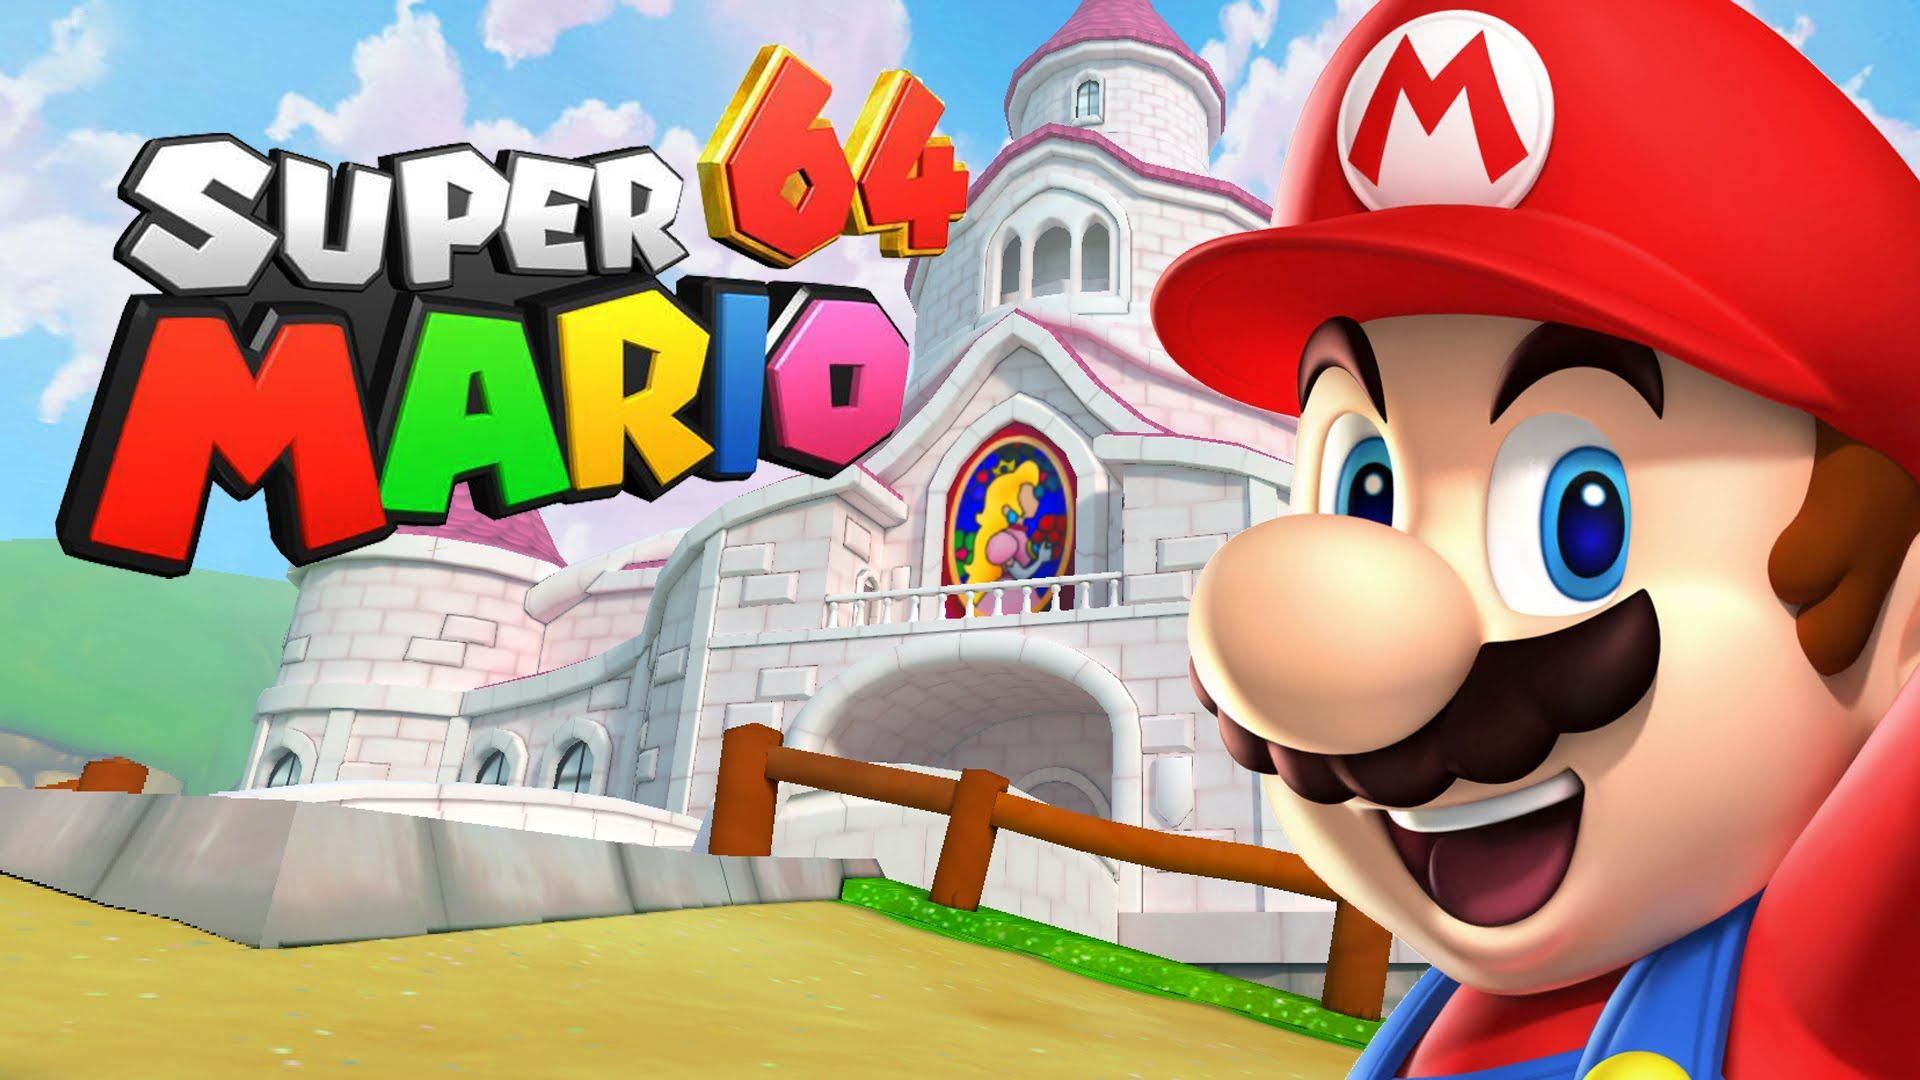 1920x1080 Super Mario 64 HD Fan Remake Developer Showcase | Super mario, Mario, Super mario bros